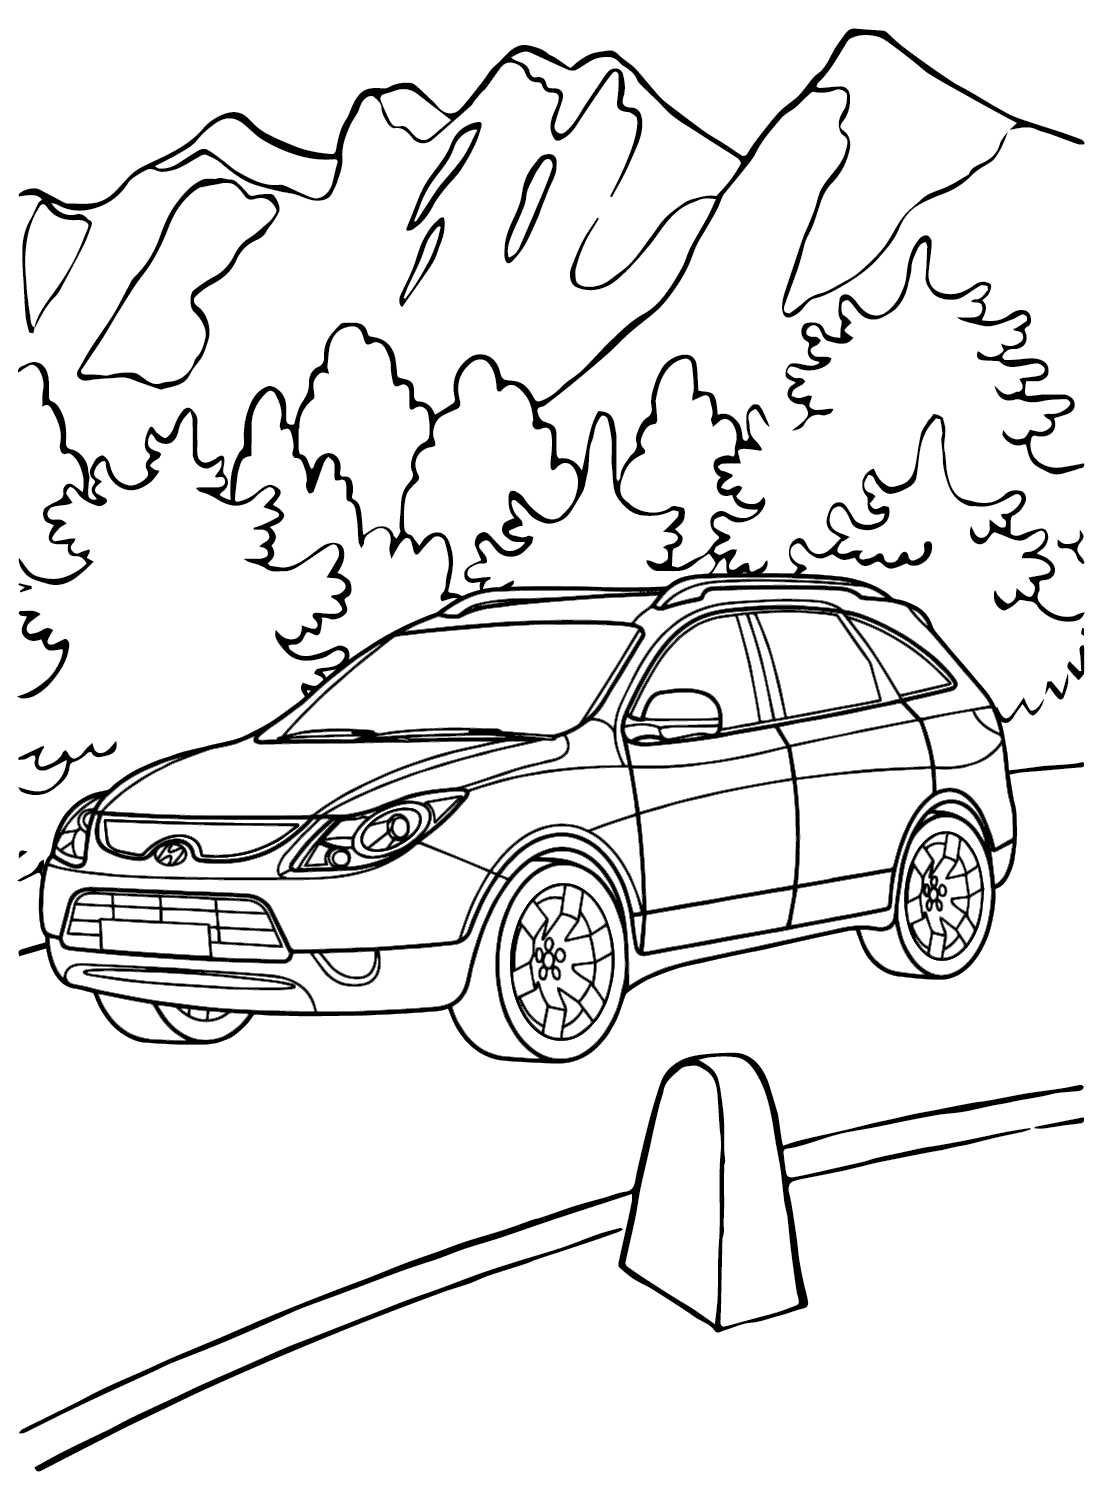 Drawing Hyundai Coloring Page from Hyundai